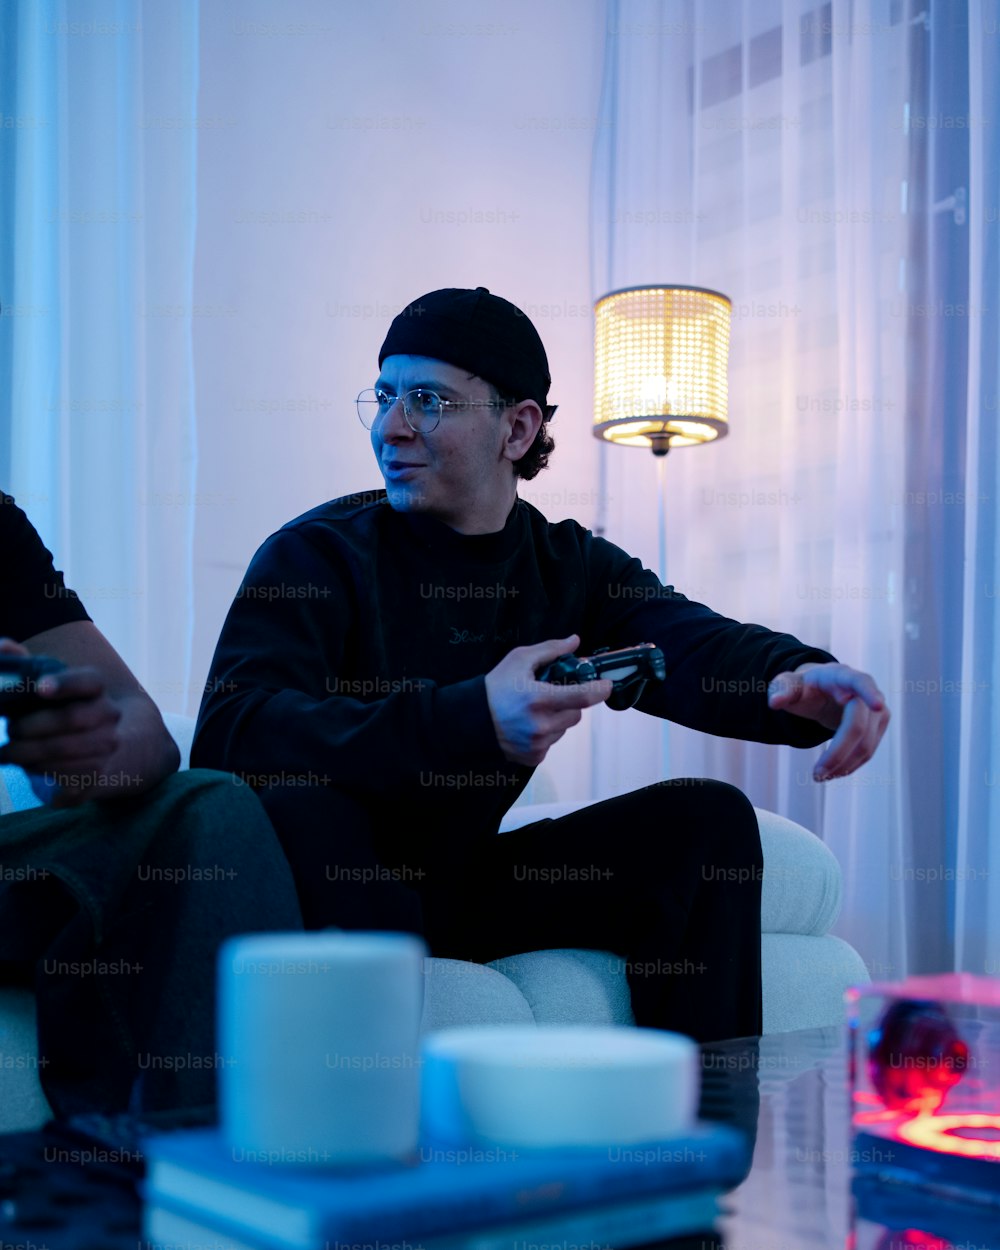 Deux hommes assis sur un canapé jouant à un jeu vidéo